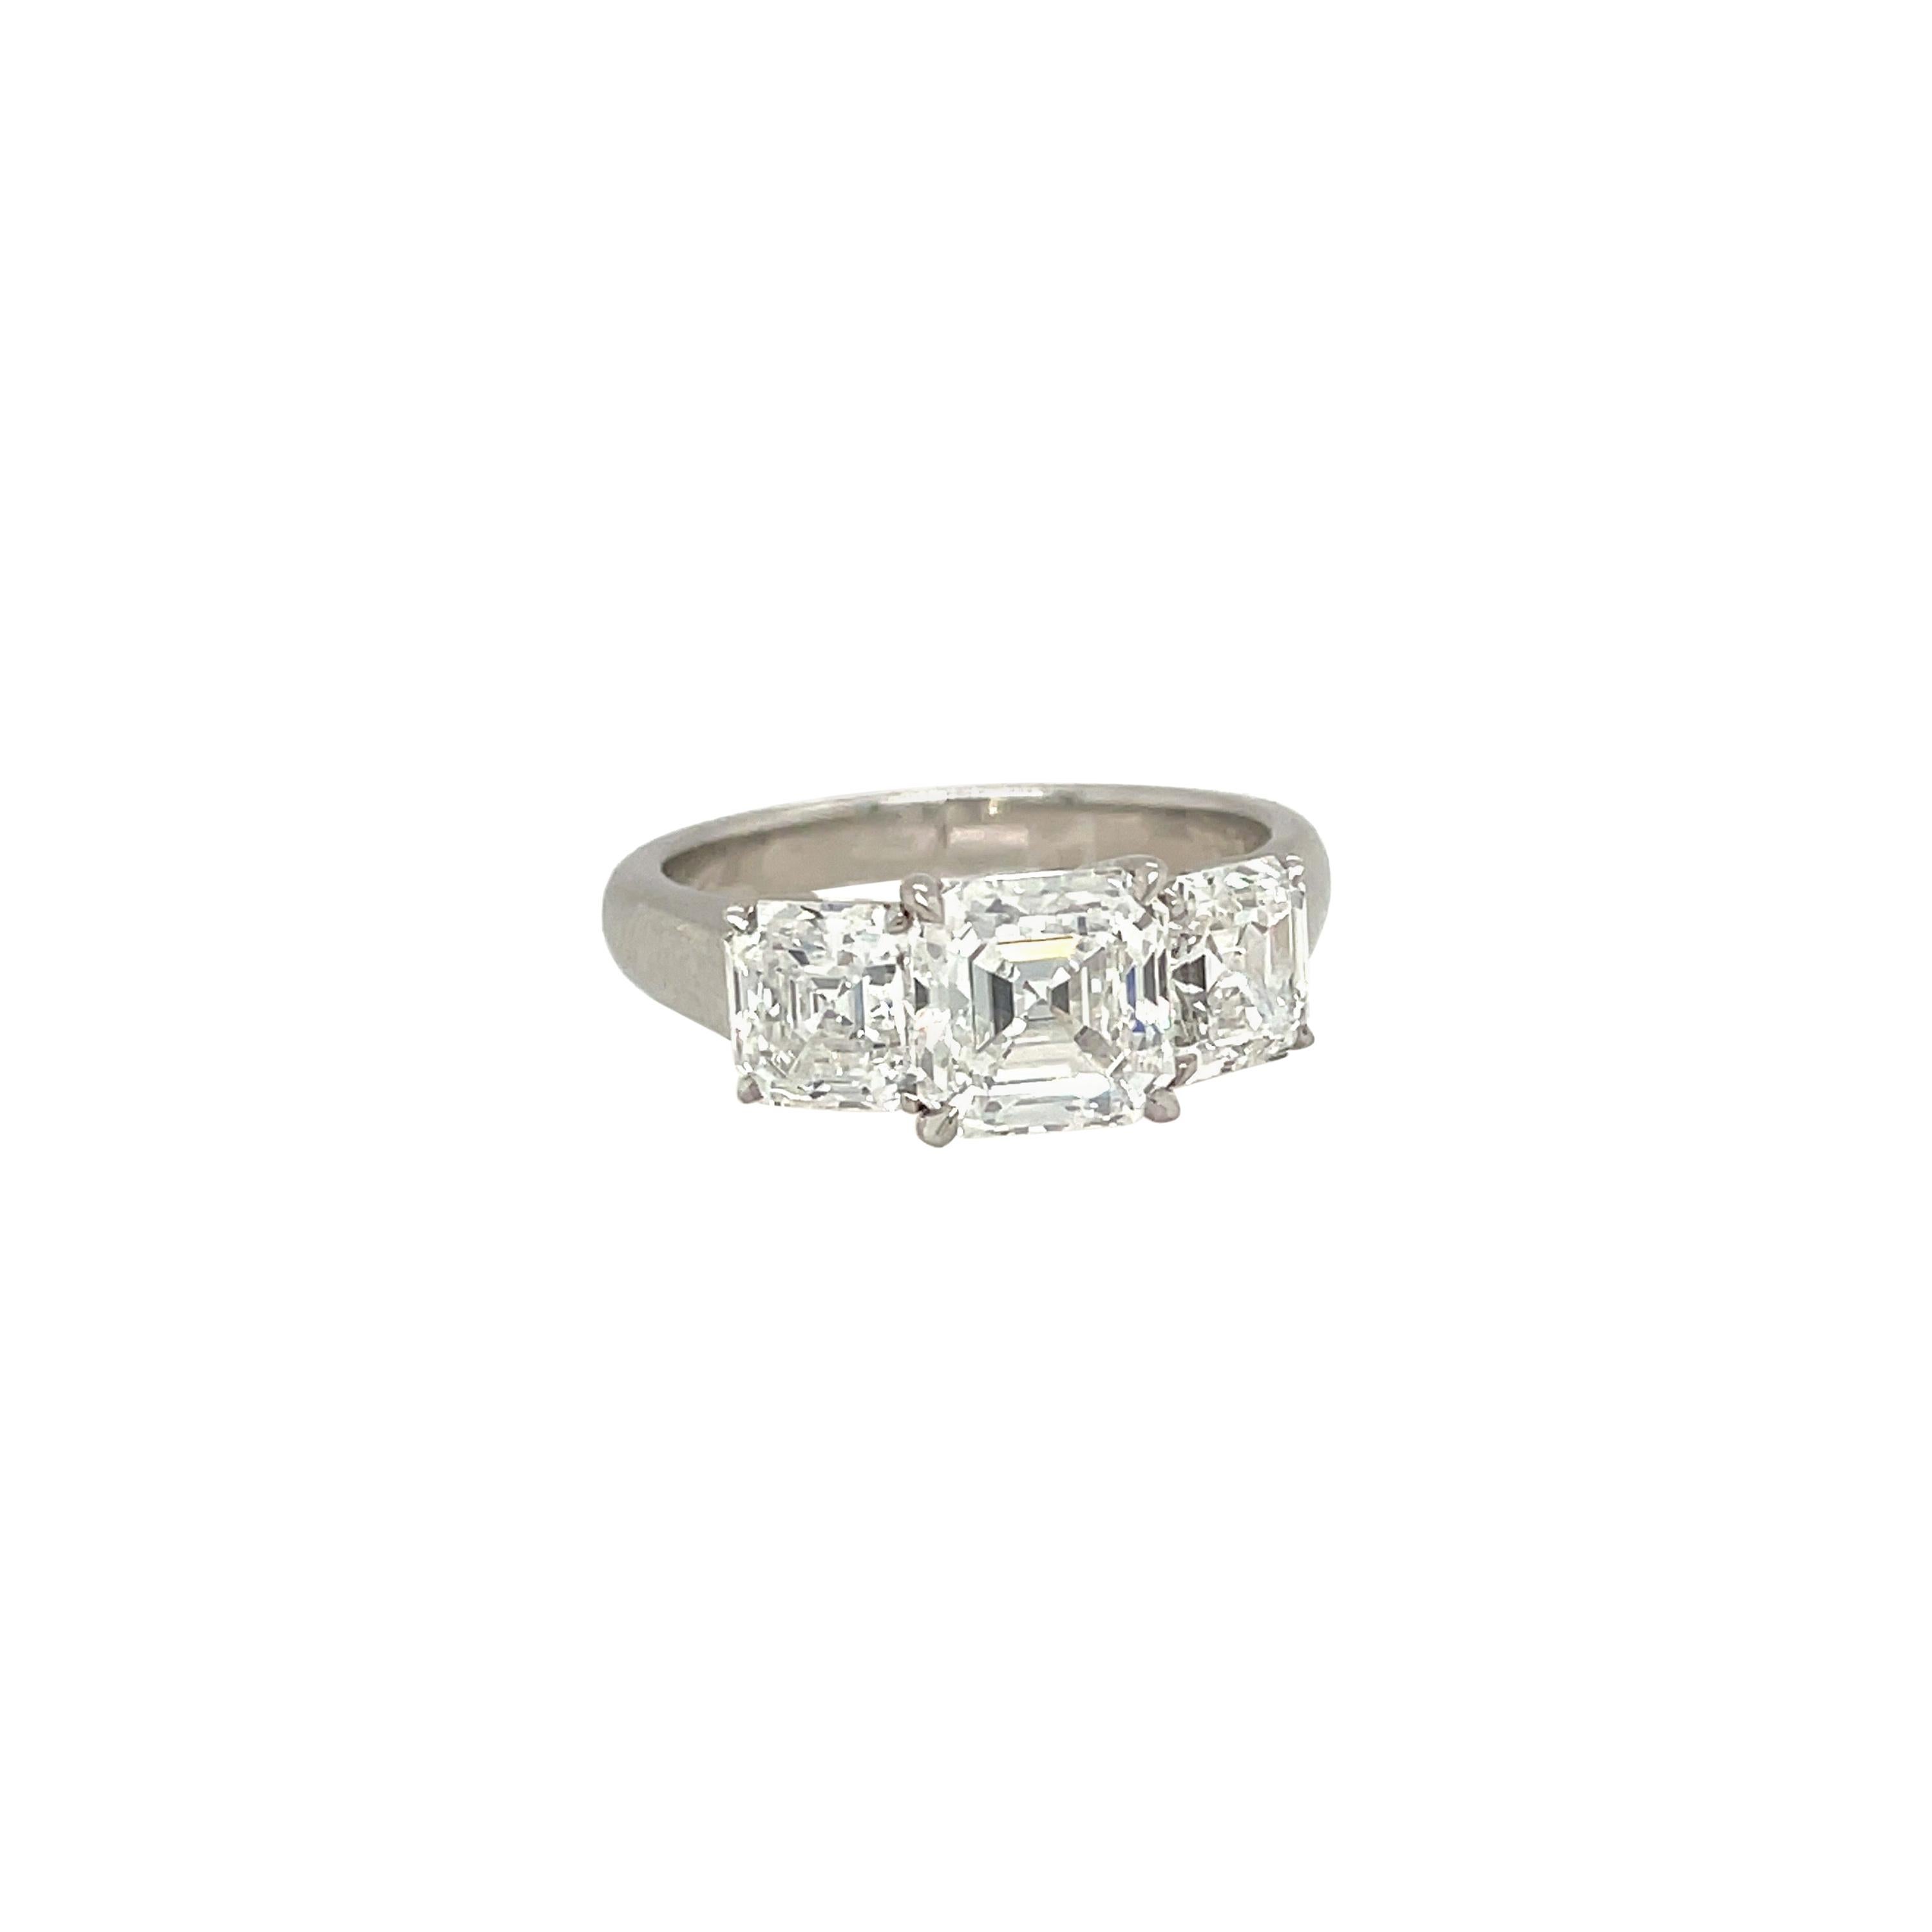 Cellini GIA Certified 3 Stone Square Emerald Cut E color Diamond Ring For Sale